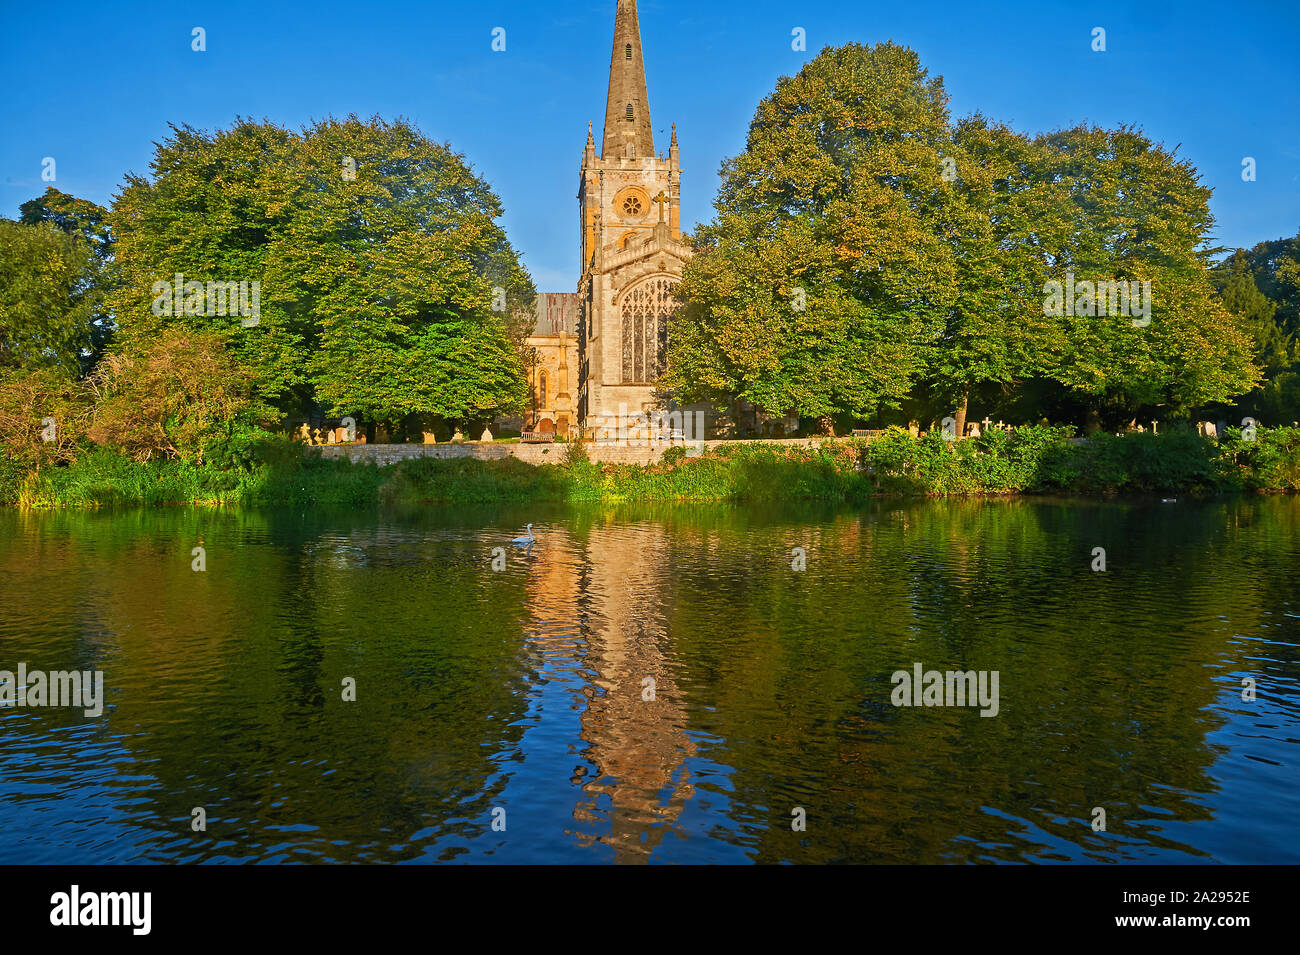 Stratford Upon Avon, Warwickshire et Holy Trinity Church, lieu de sépulture de William Shakespeare, se situe sur les rives de la rivière Avon. Banque D'Images